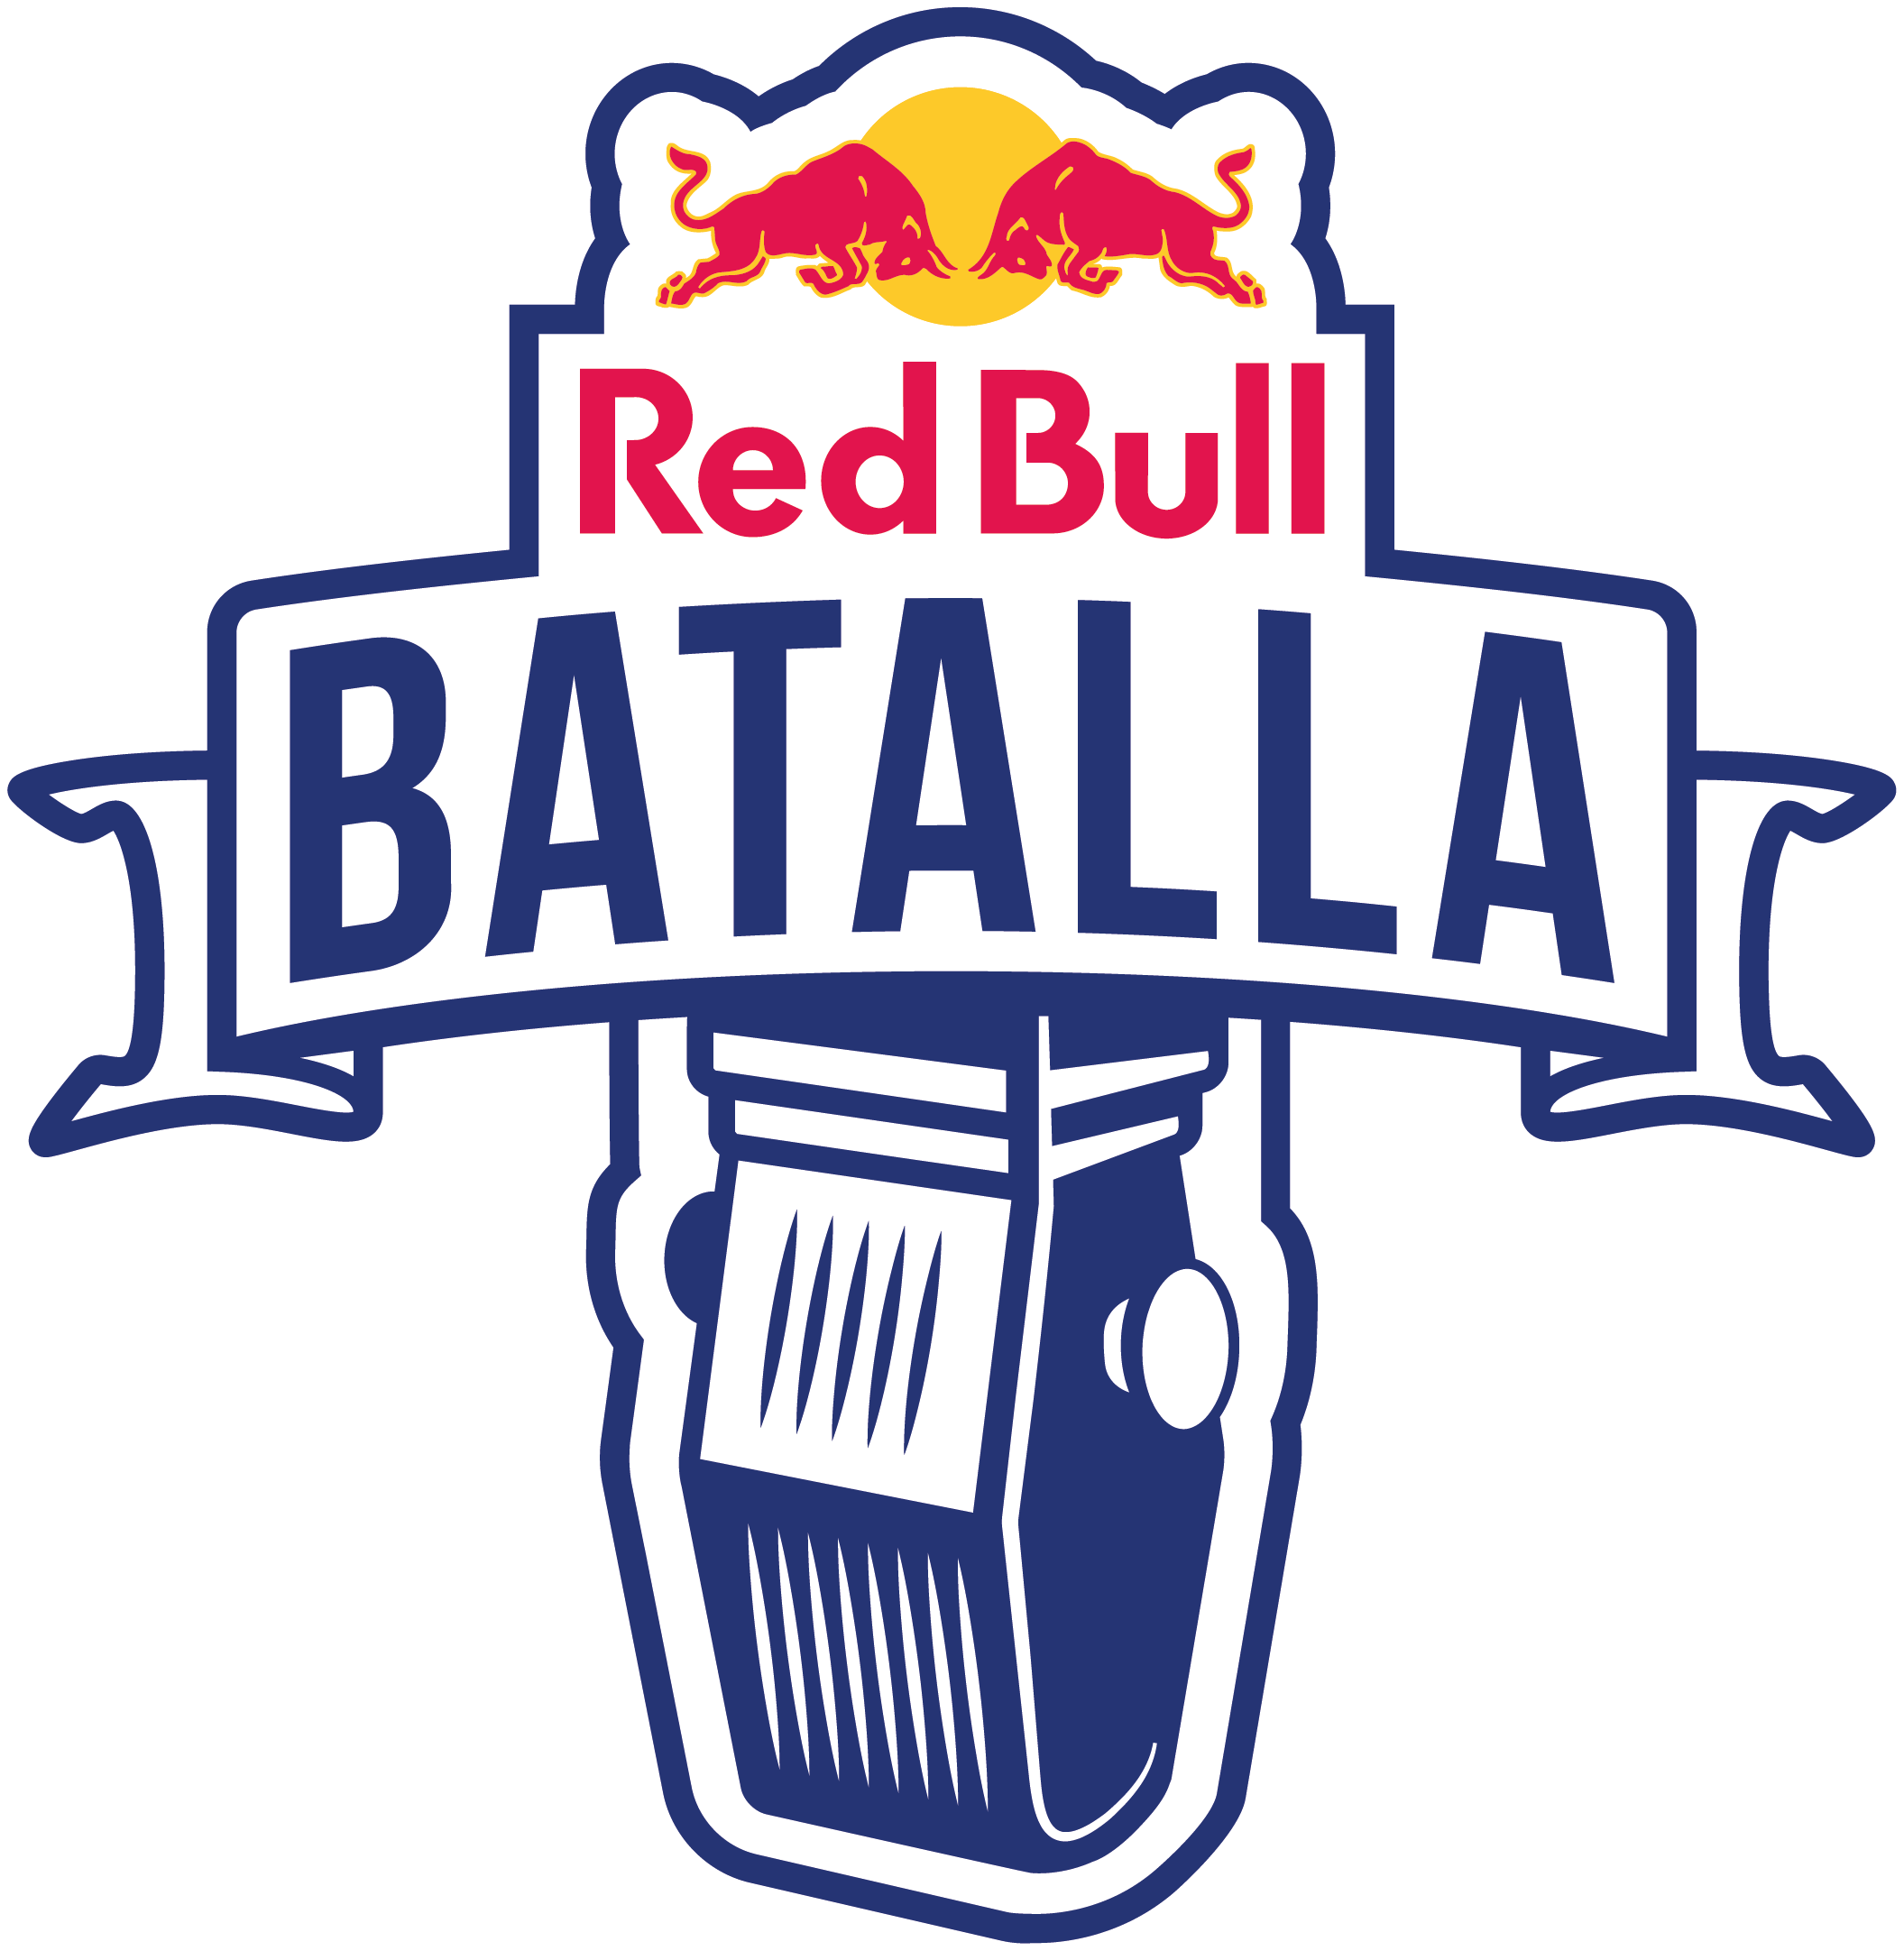 Red Bull Batalla Nacional España | Wiki Rap Fandom